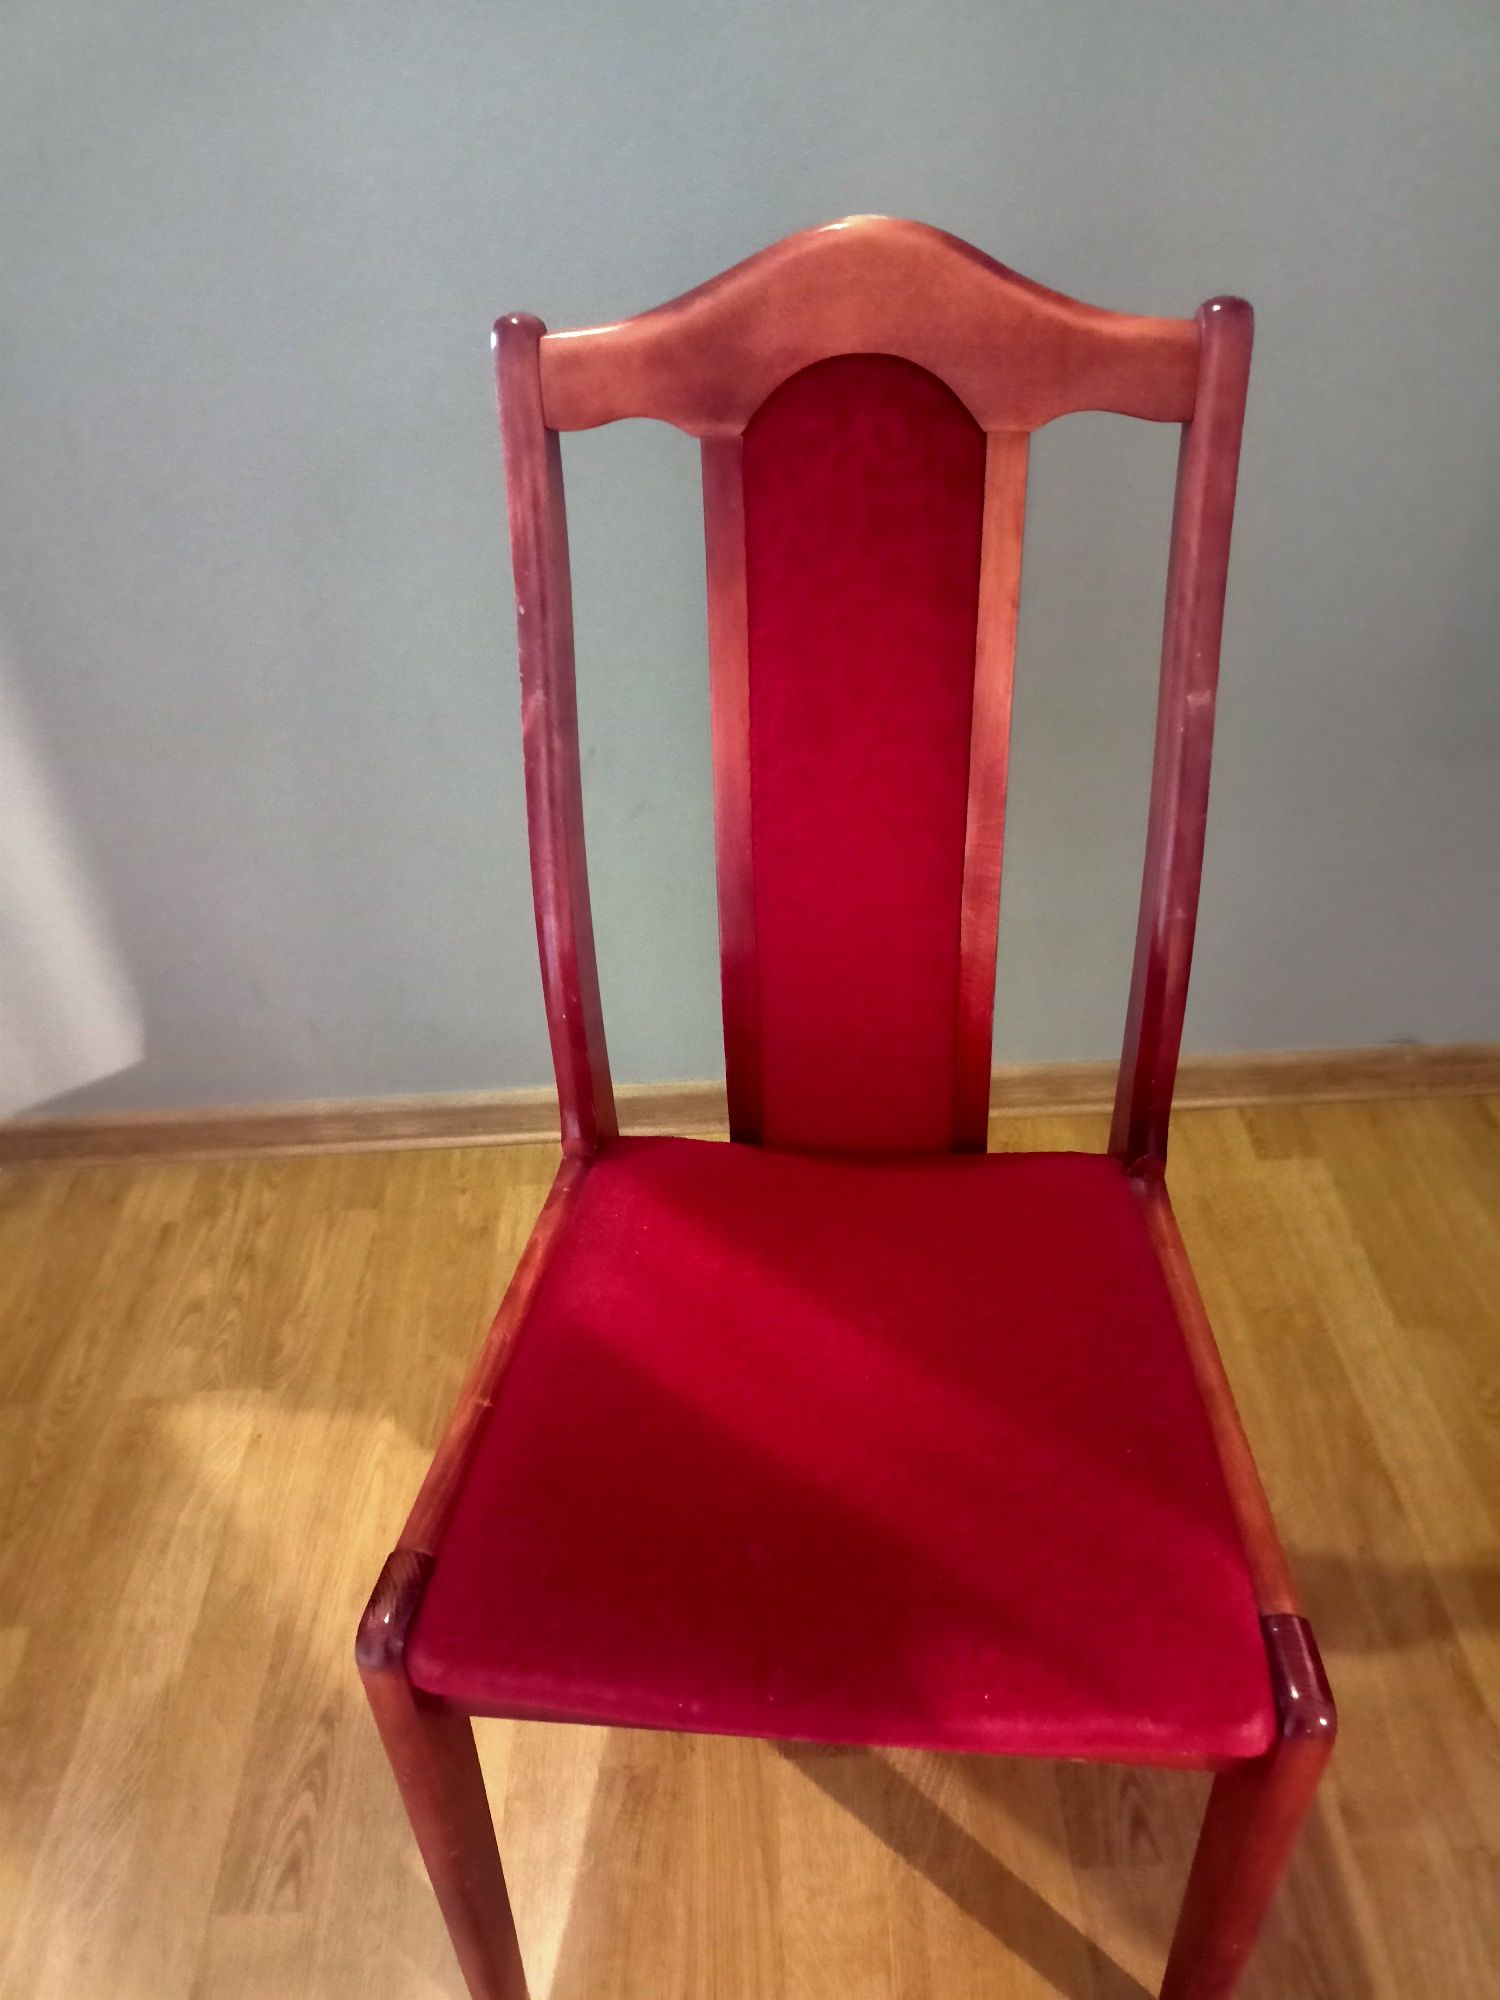 6 krzeseł wysokość 96cm szerokość 45cm w stanie dobrym